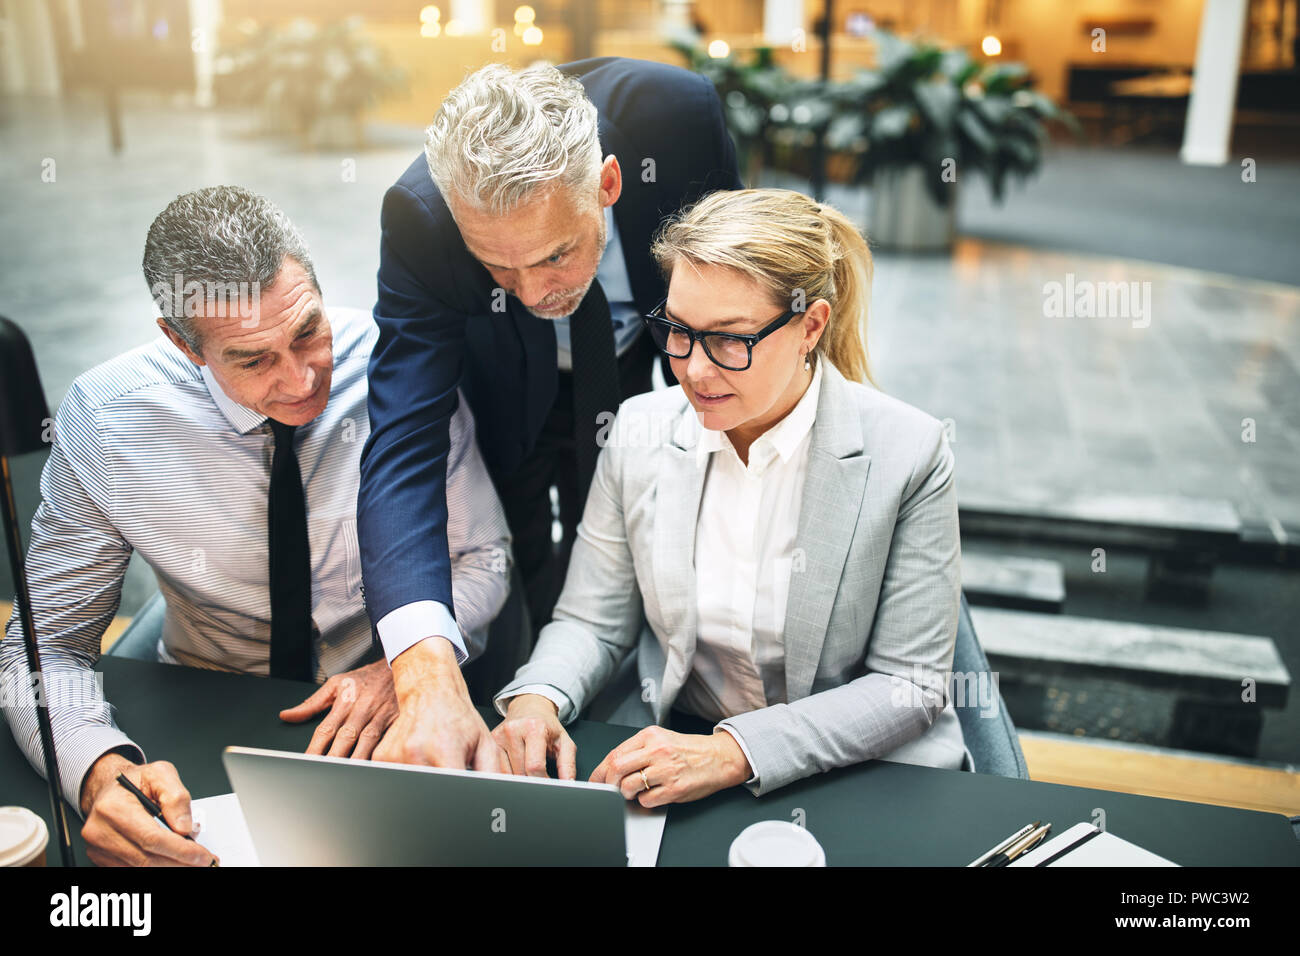 Administrador de maduro y dos compañeros de trabajo hablando juntos a través de un portátil durante una reunión en el vestíbulo de una moderna oficina Foto de stock